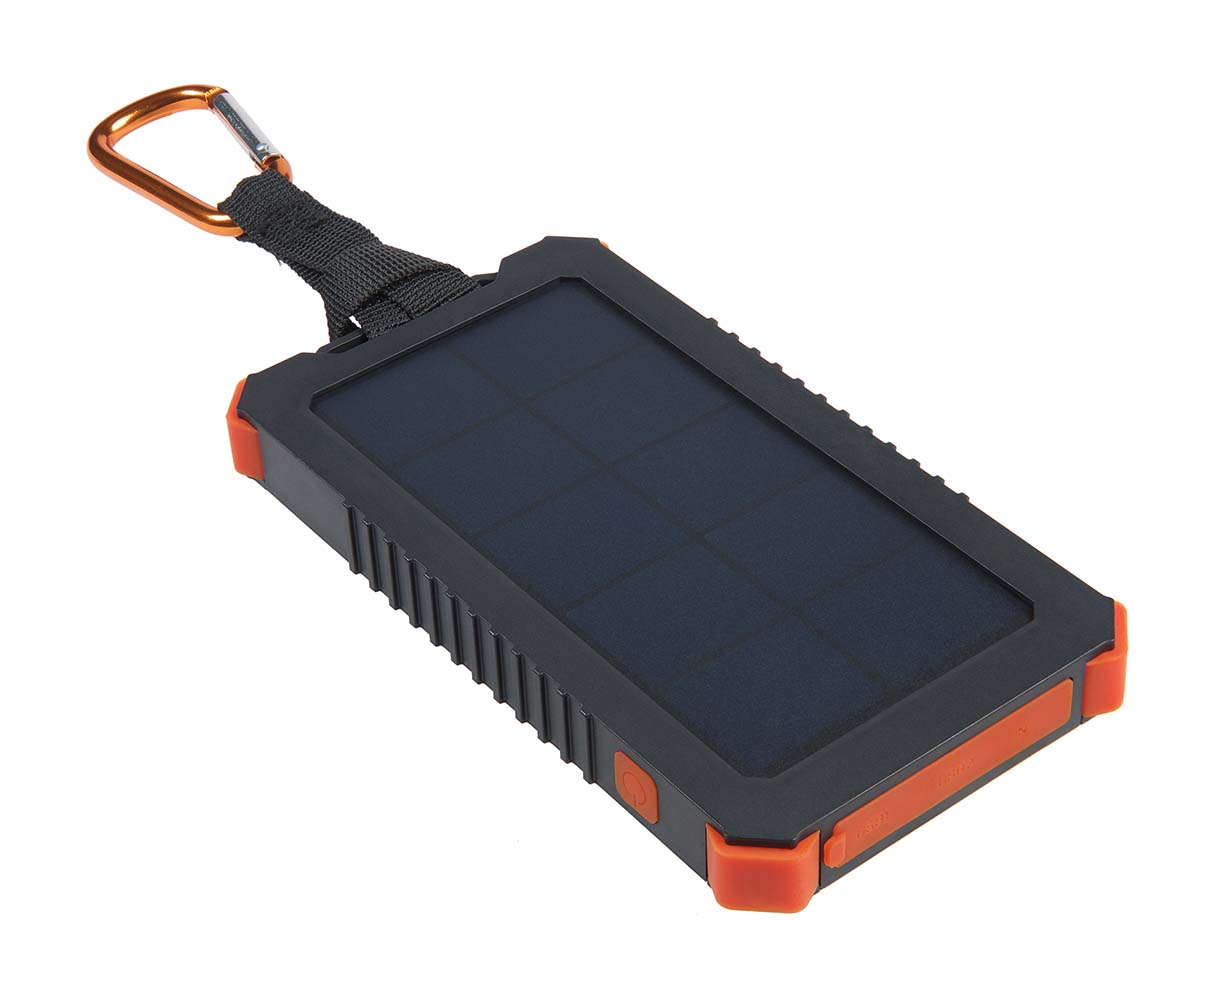 5921081 De Instinct Solar lader ideaal voor onderweg. De lader is valbestendig (1M), spatwaterdicht. De solar lader beschikt over een interne batterij van 5.000mAh, deze kan genoeg energie opslaan om uw smartphone 4 keer op te laden! De solar lader is voorzien van een handige zaklamp. De interne batterij is gemakkelijk weer op te laden via USB of netstroom, of door gebruik te maken van het zonnepaneel.